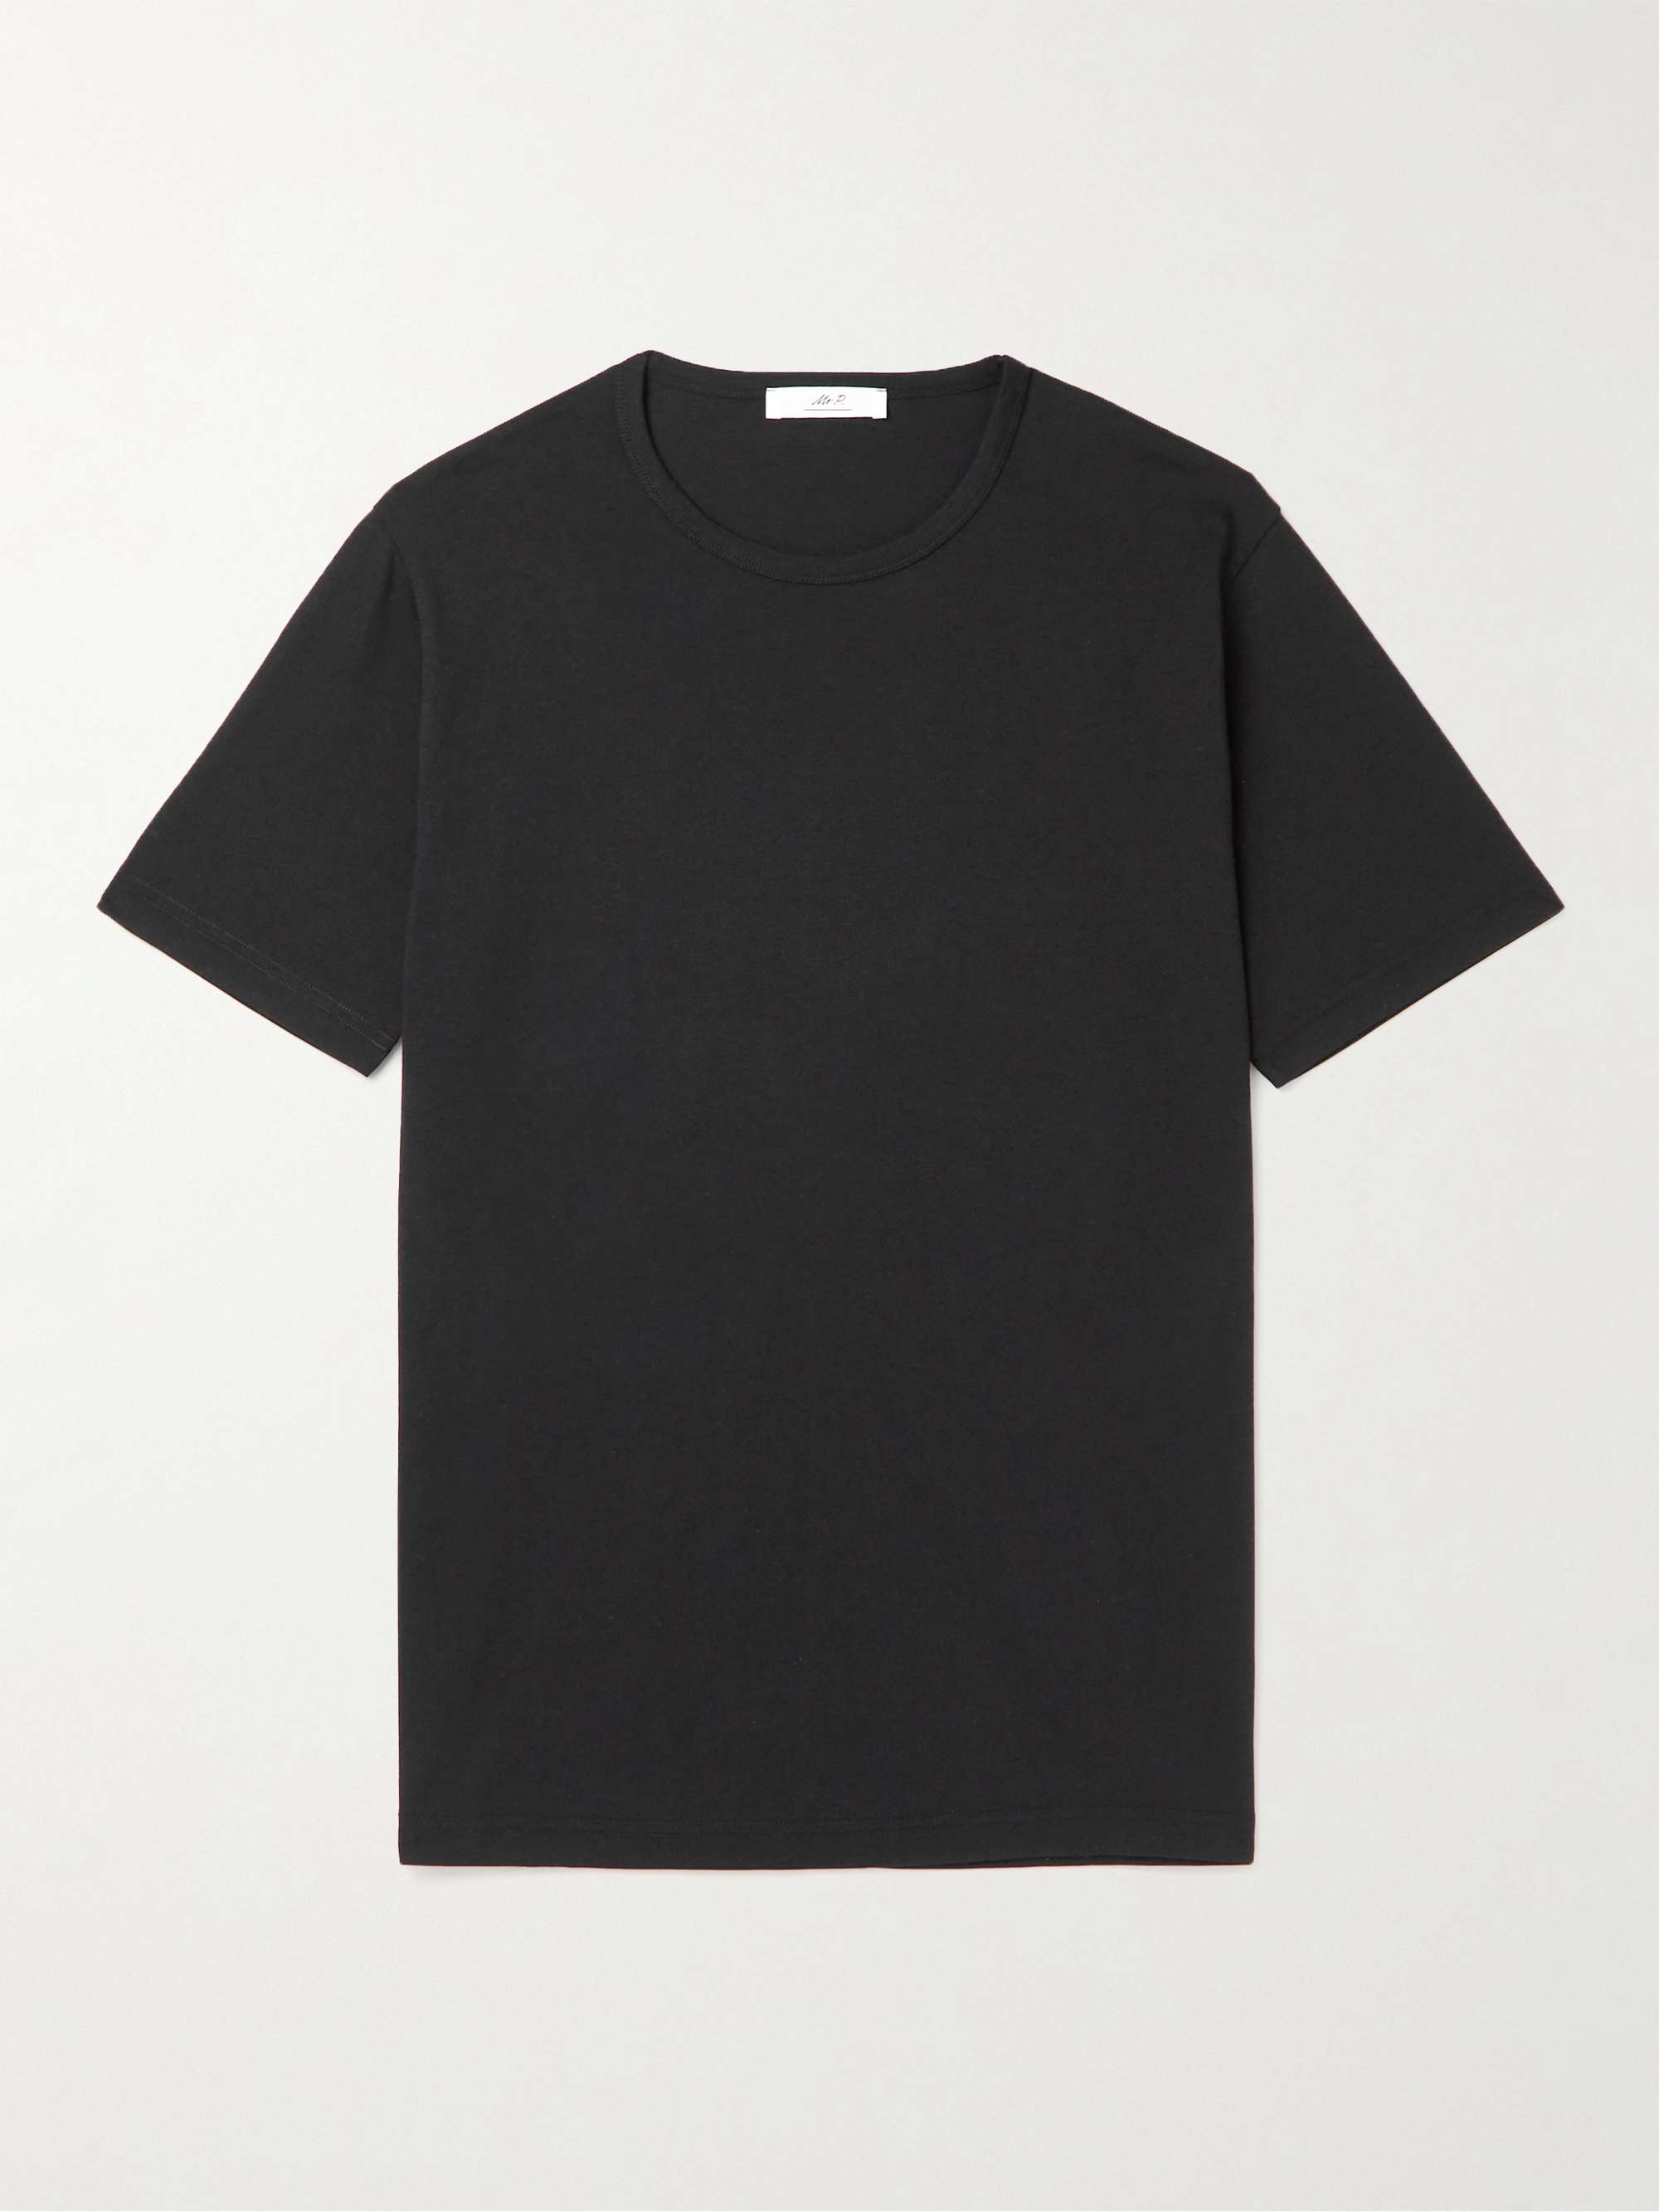 T-shirt in misto lyocell e cotone OFFICINE GÉNÉRALE da uomo | MR PORTER